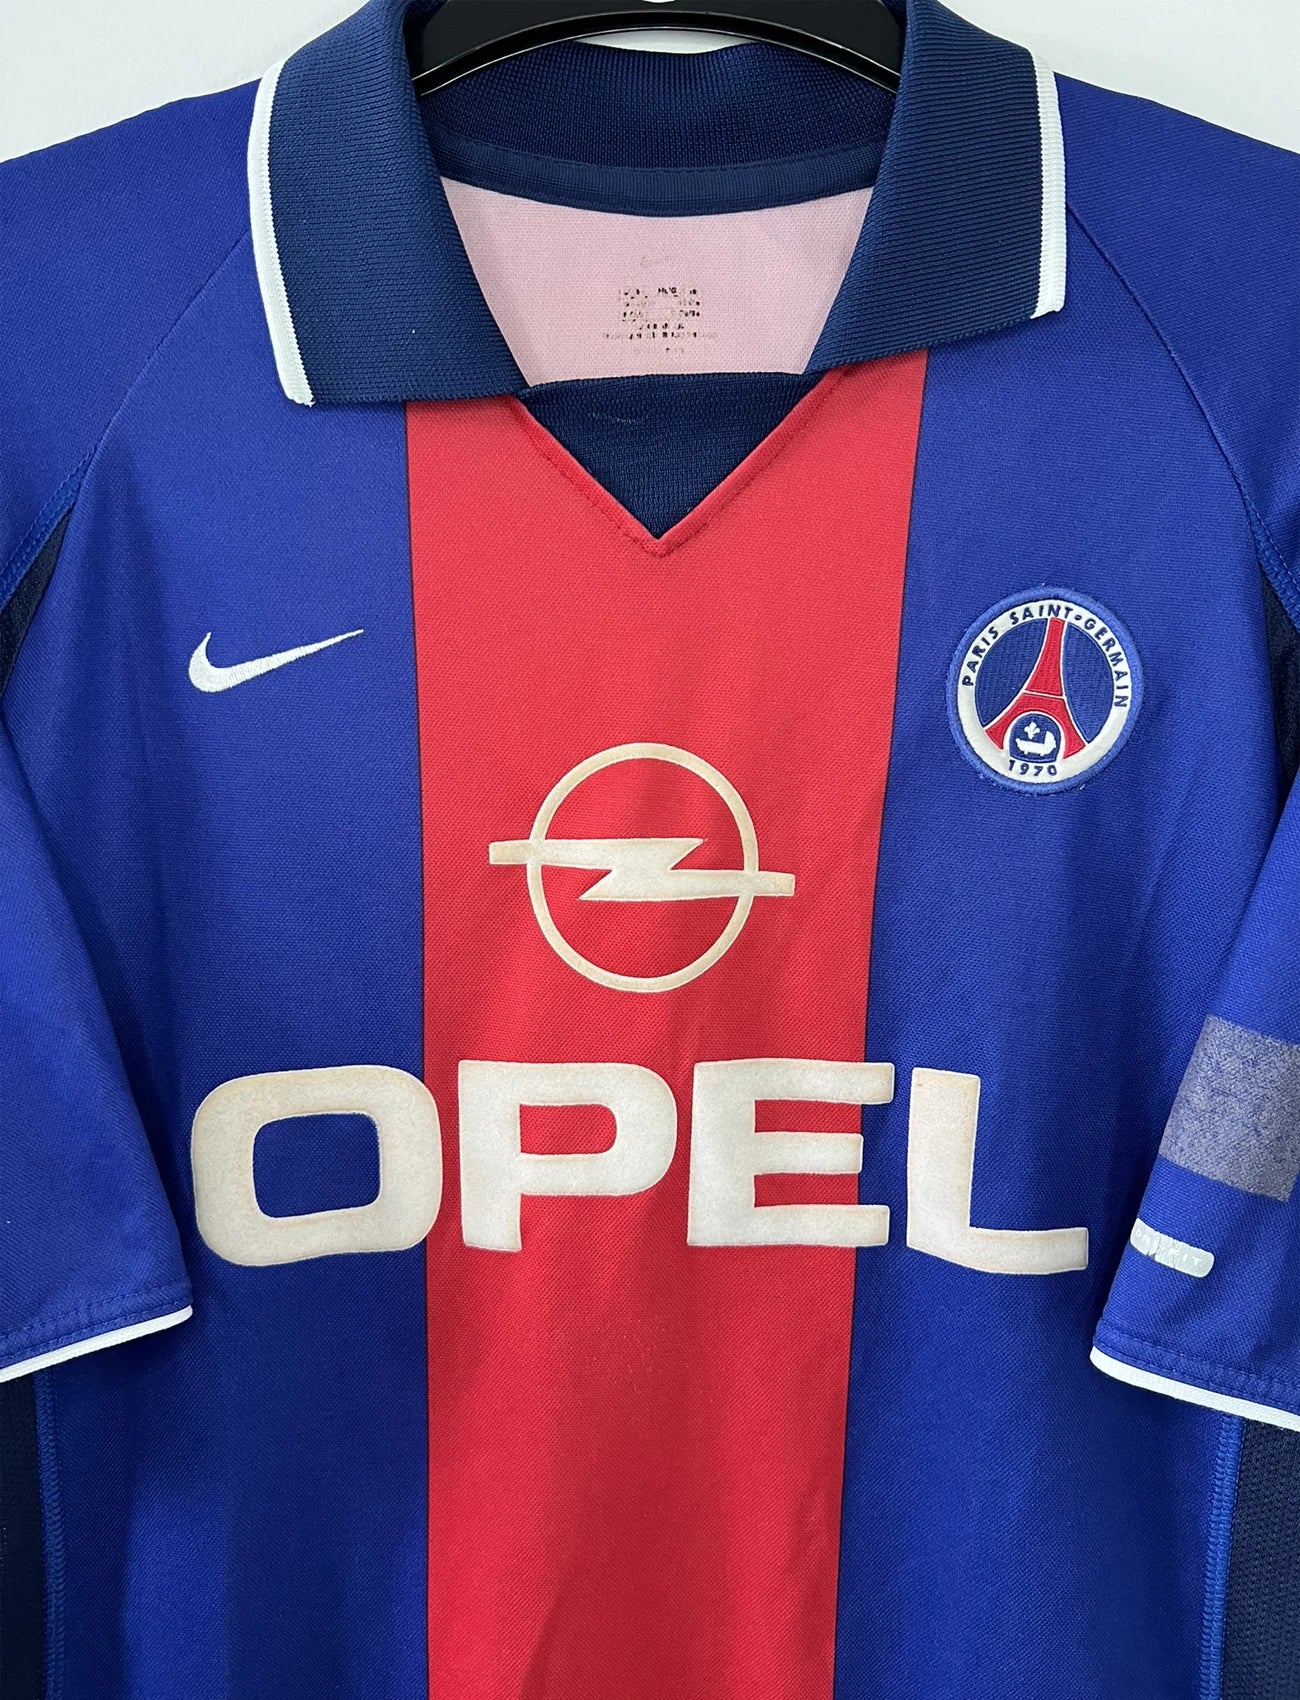 Maillot de foot vintage domicile du PSG de la saison 2000/2001. Le maillot est de couleur bleu et rouge. On peut retrouver l'équipementier nike et le sponsor OPEL